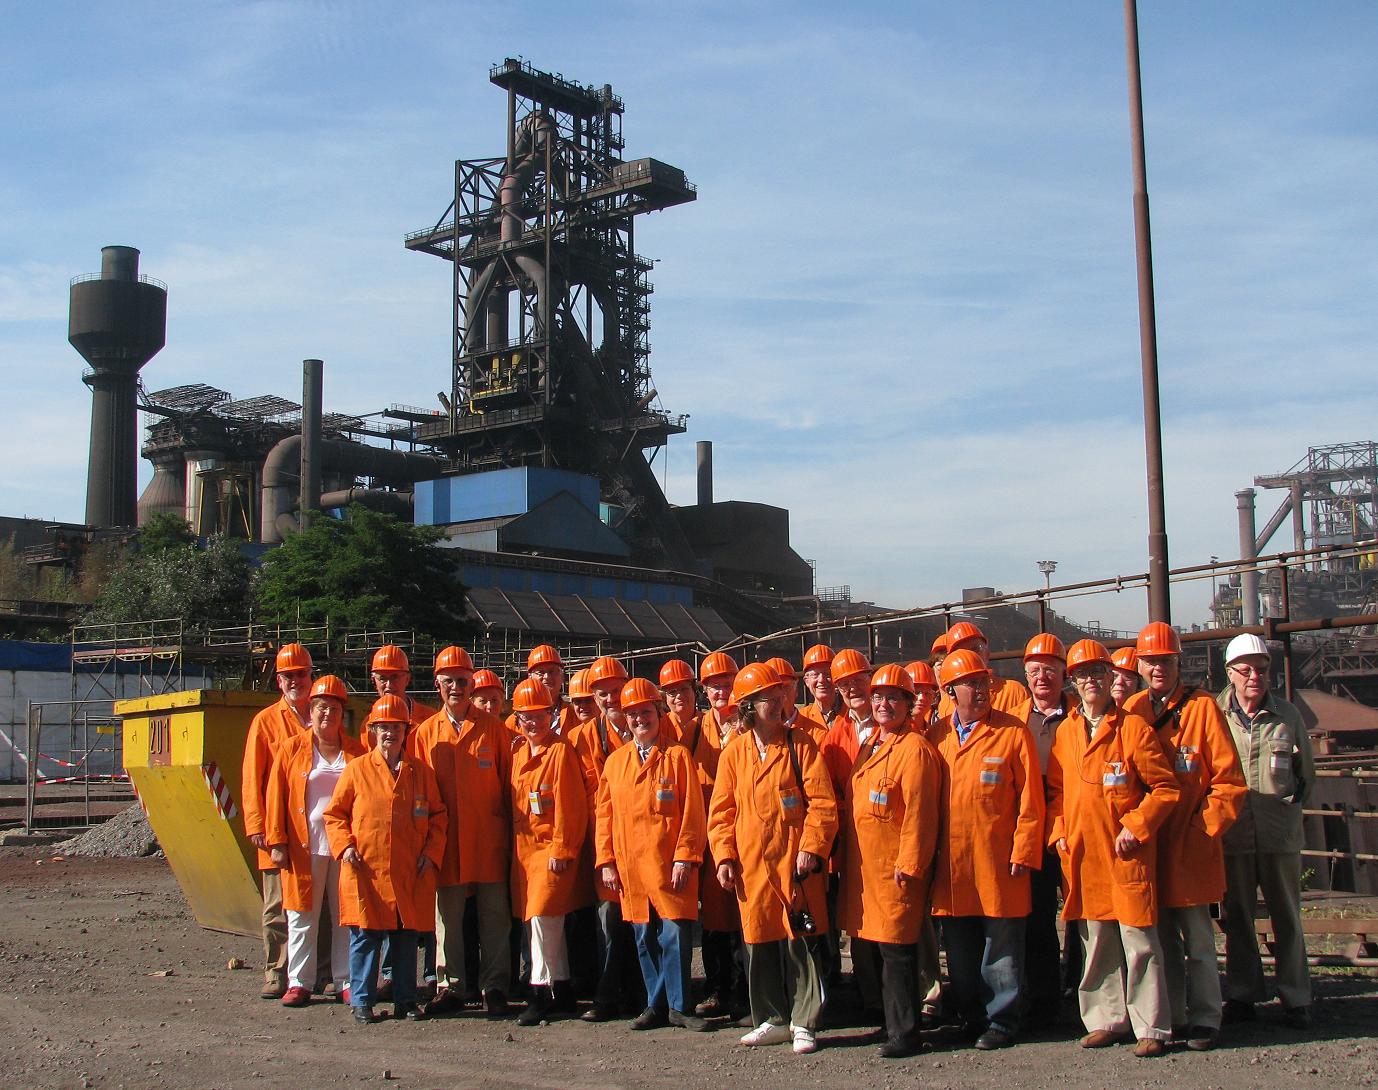 Stahlexkursion am 2.7.2010: Vor dem Hochofen A bei HKM